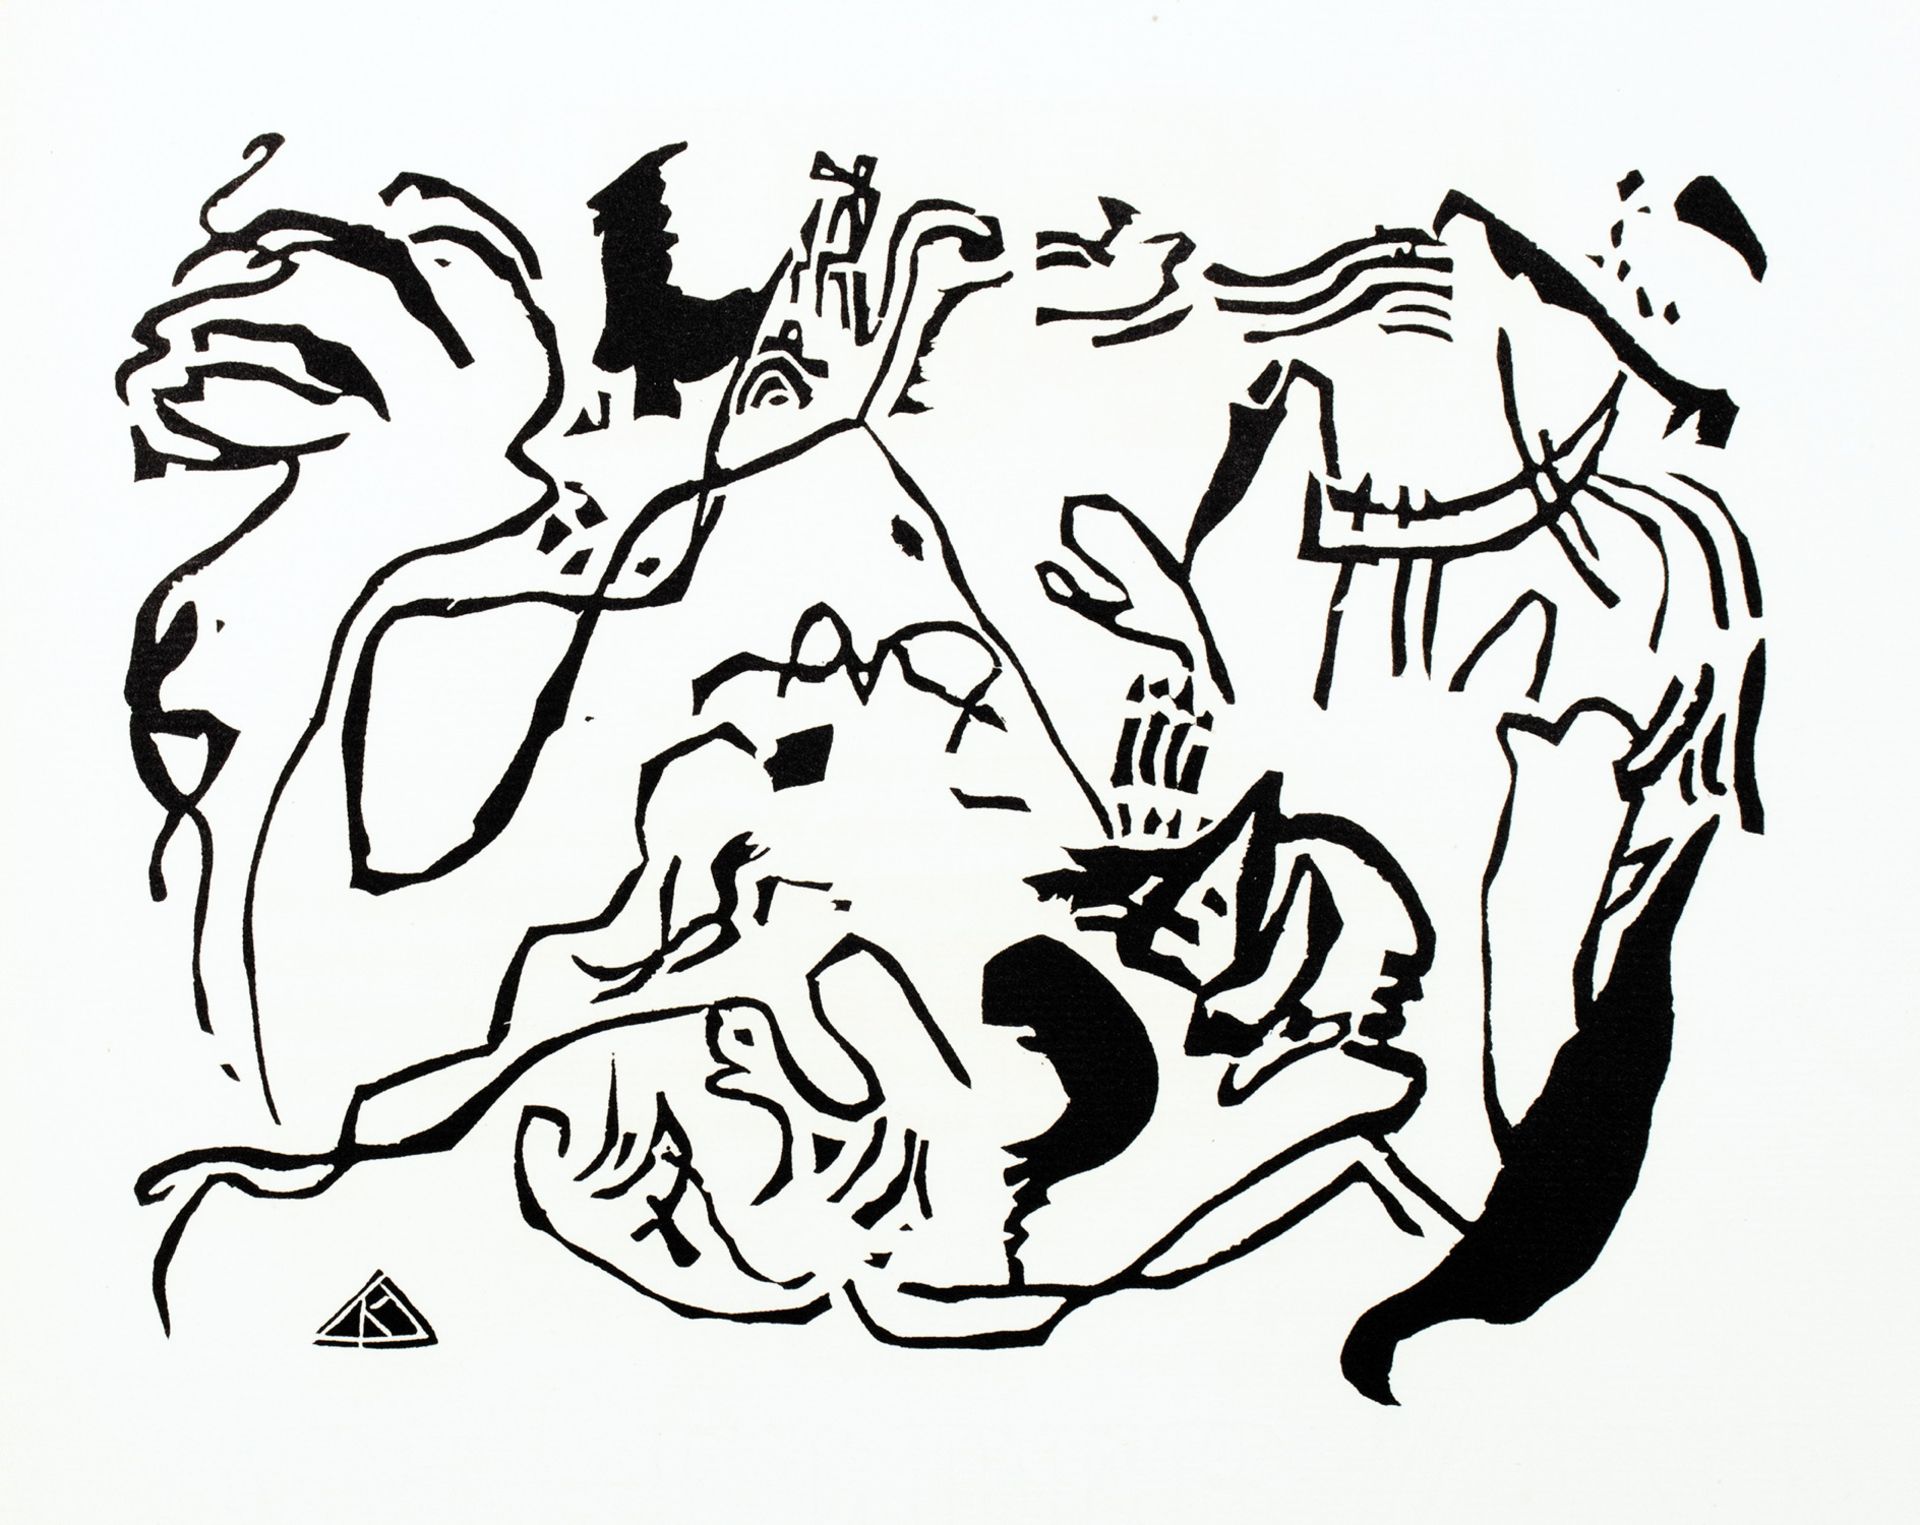 [Wassily] Kandinsky. Klänge - Bild 11 aus 11